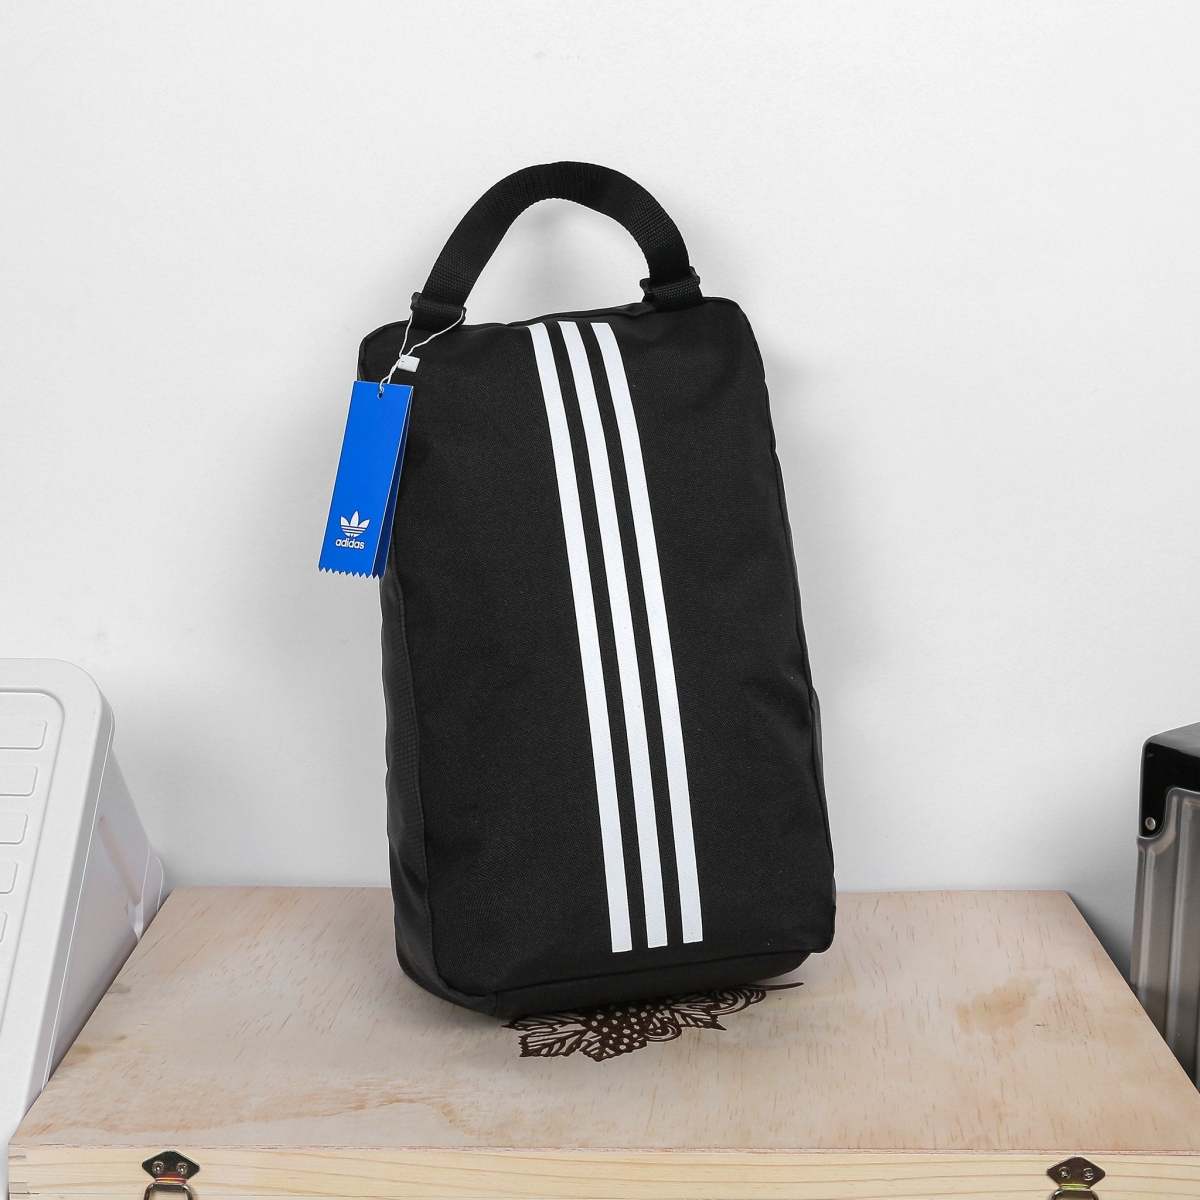 Túi đựng giày đá bóng Adidas FM4229